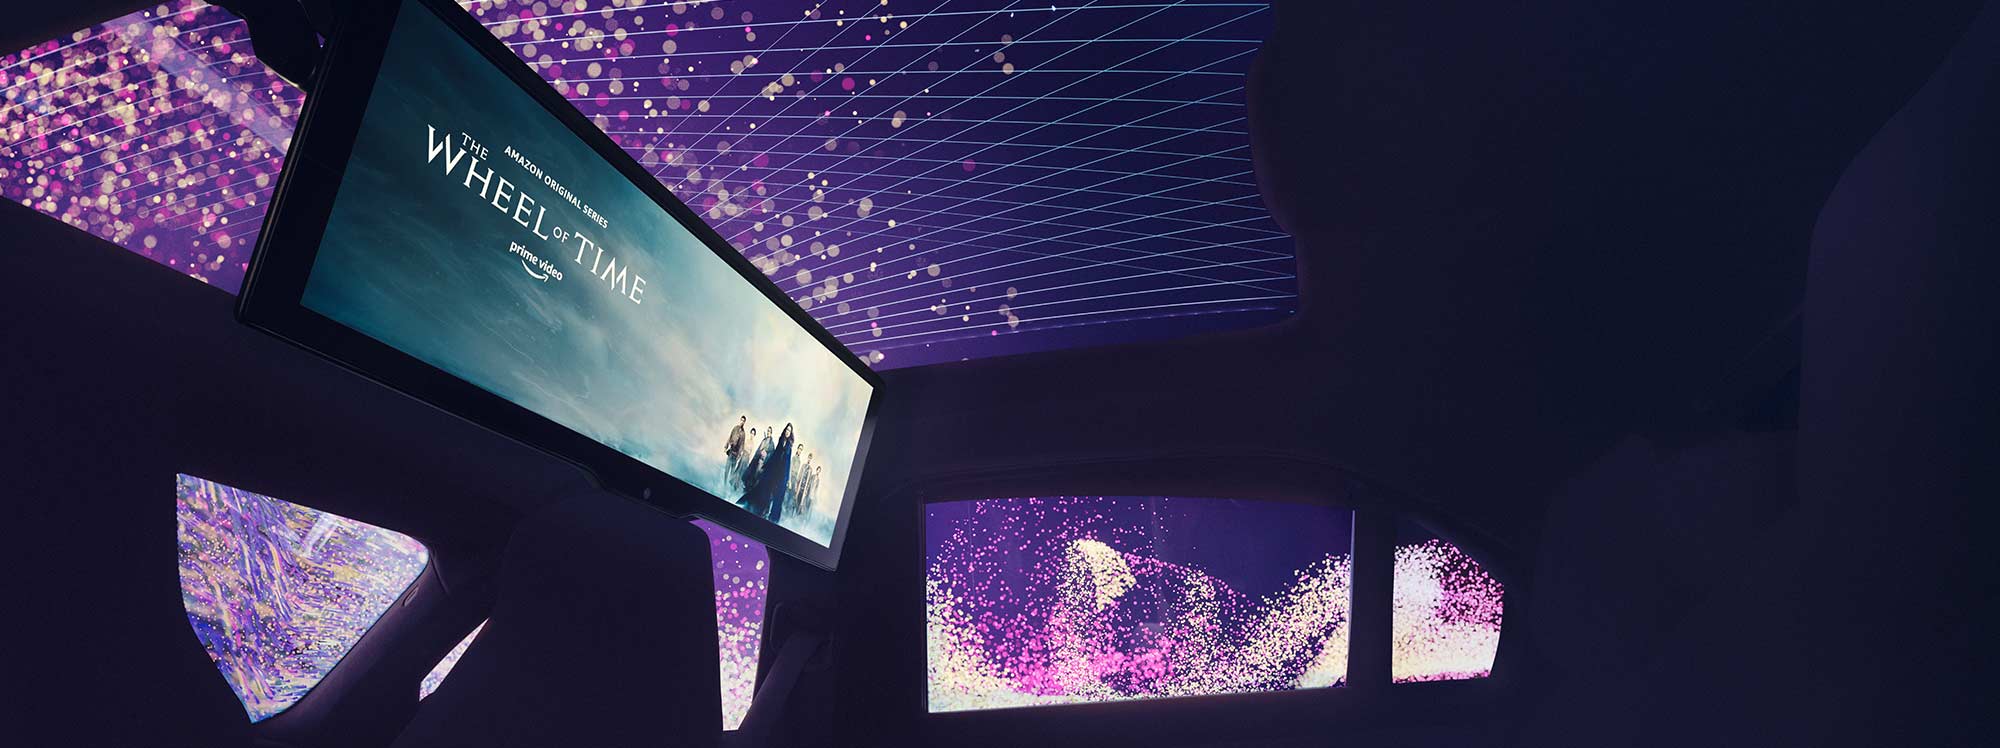 BMW transforma la cabina de sus autos en una sala de cine